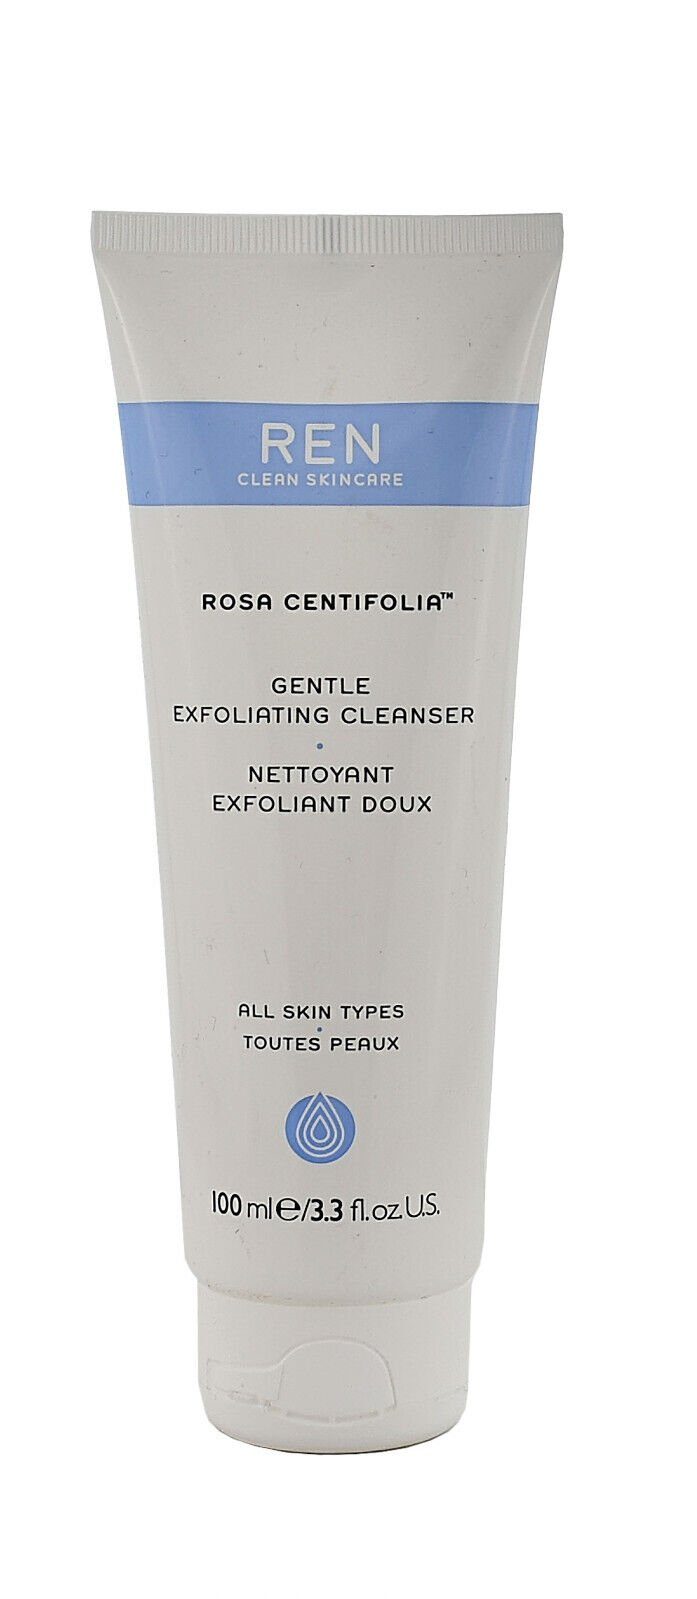 Günstige Artikel diesen Monat REN Clean Skincare 100ML CLEANSER ROSA REN EXFOLIATING Gesichtspeeling